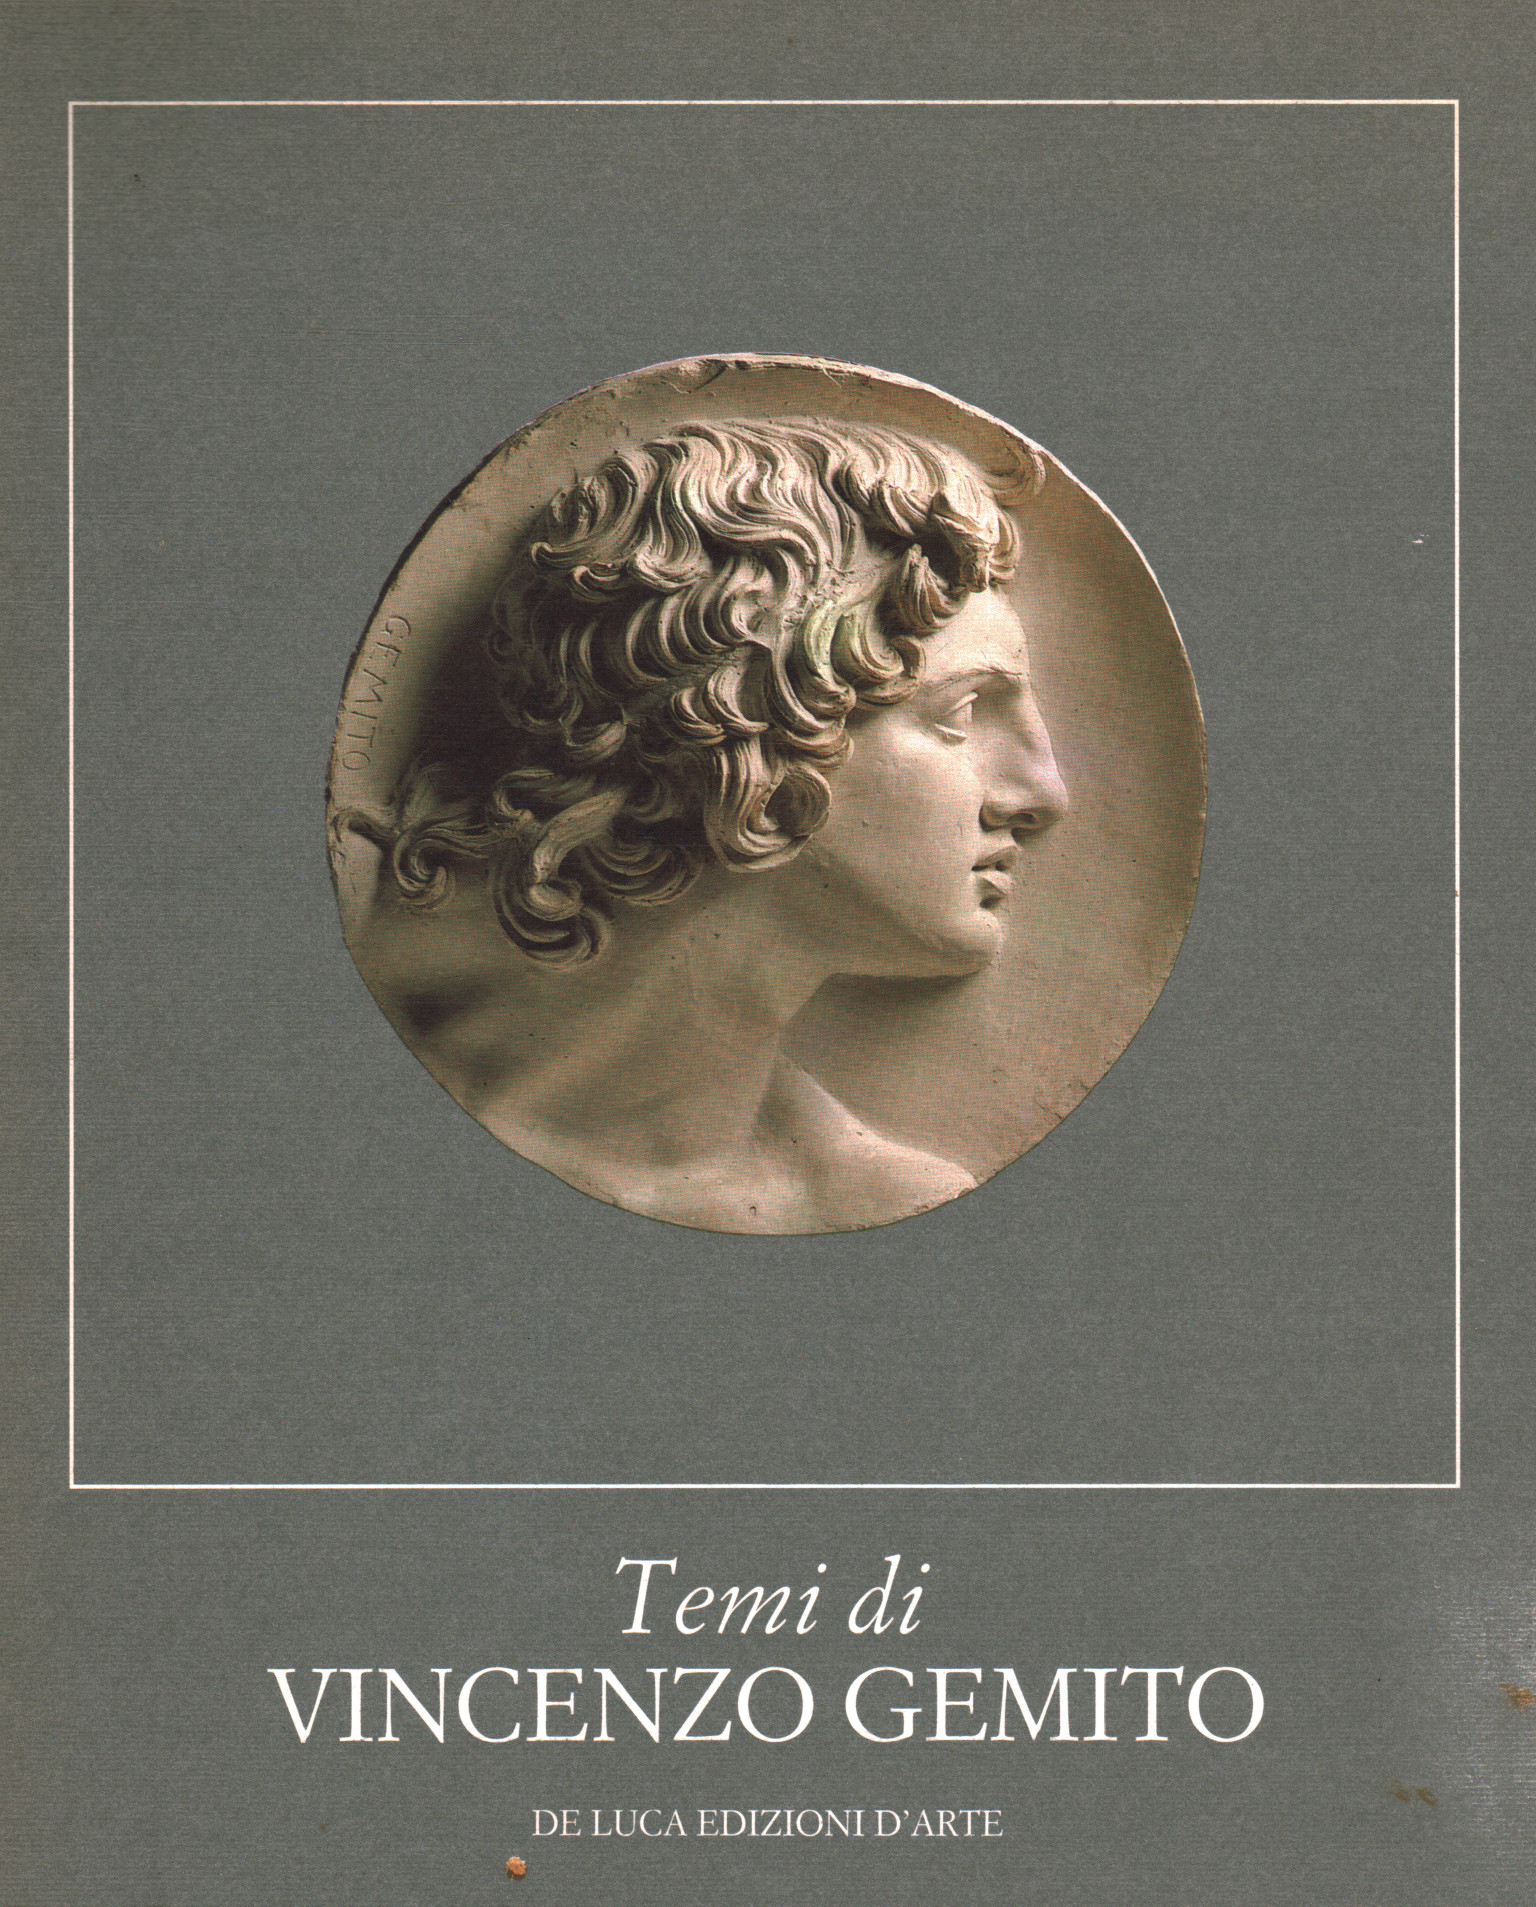 Temas de Vincenzo Gemito